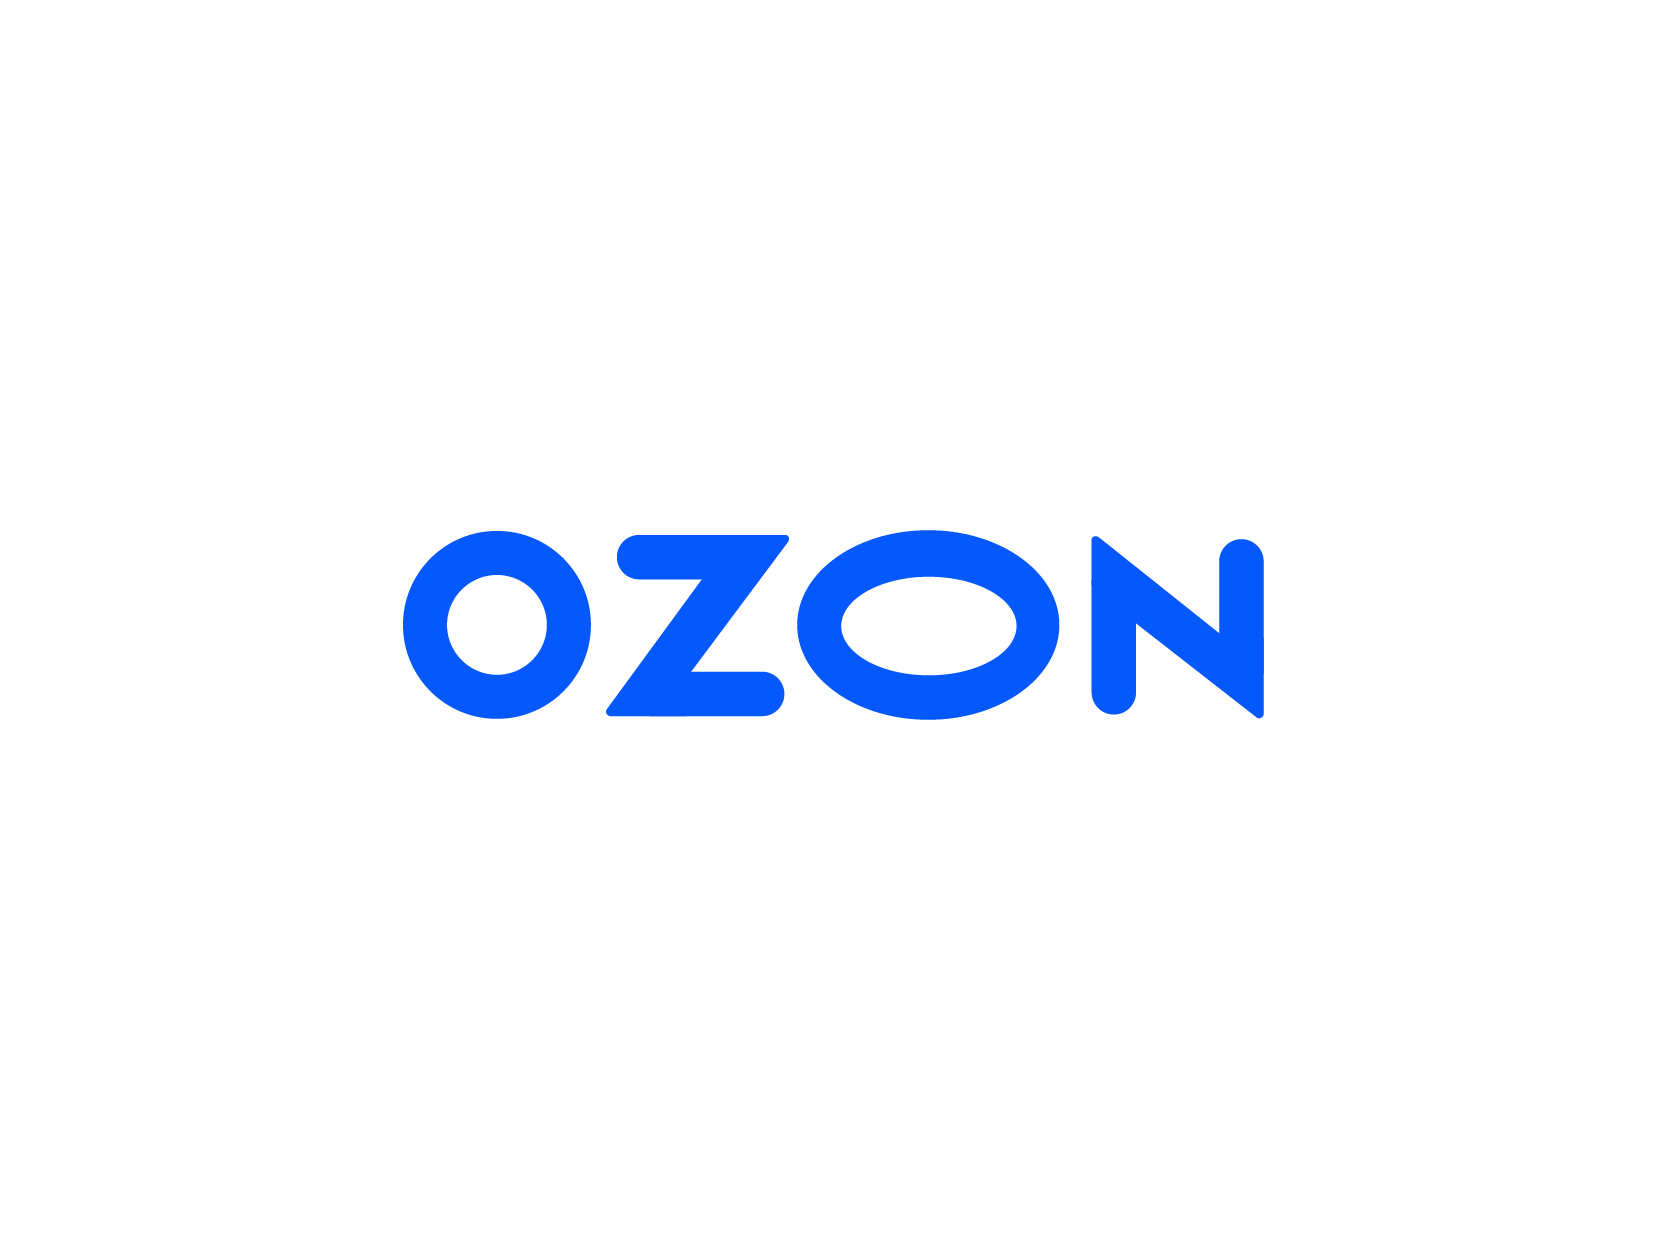 Ozon俄罗斯在线零售平台logo标志设计